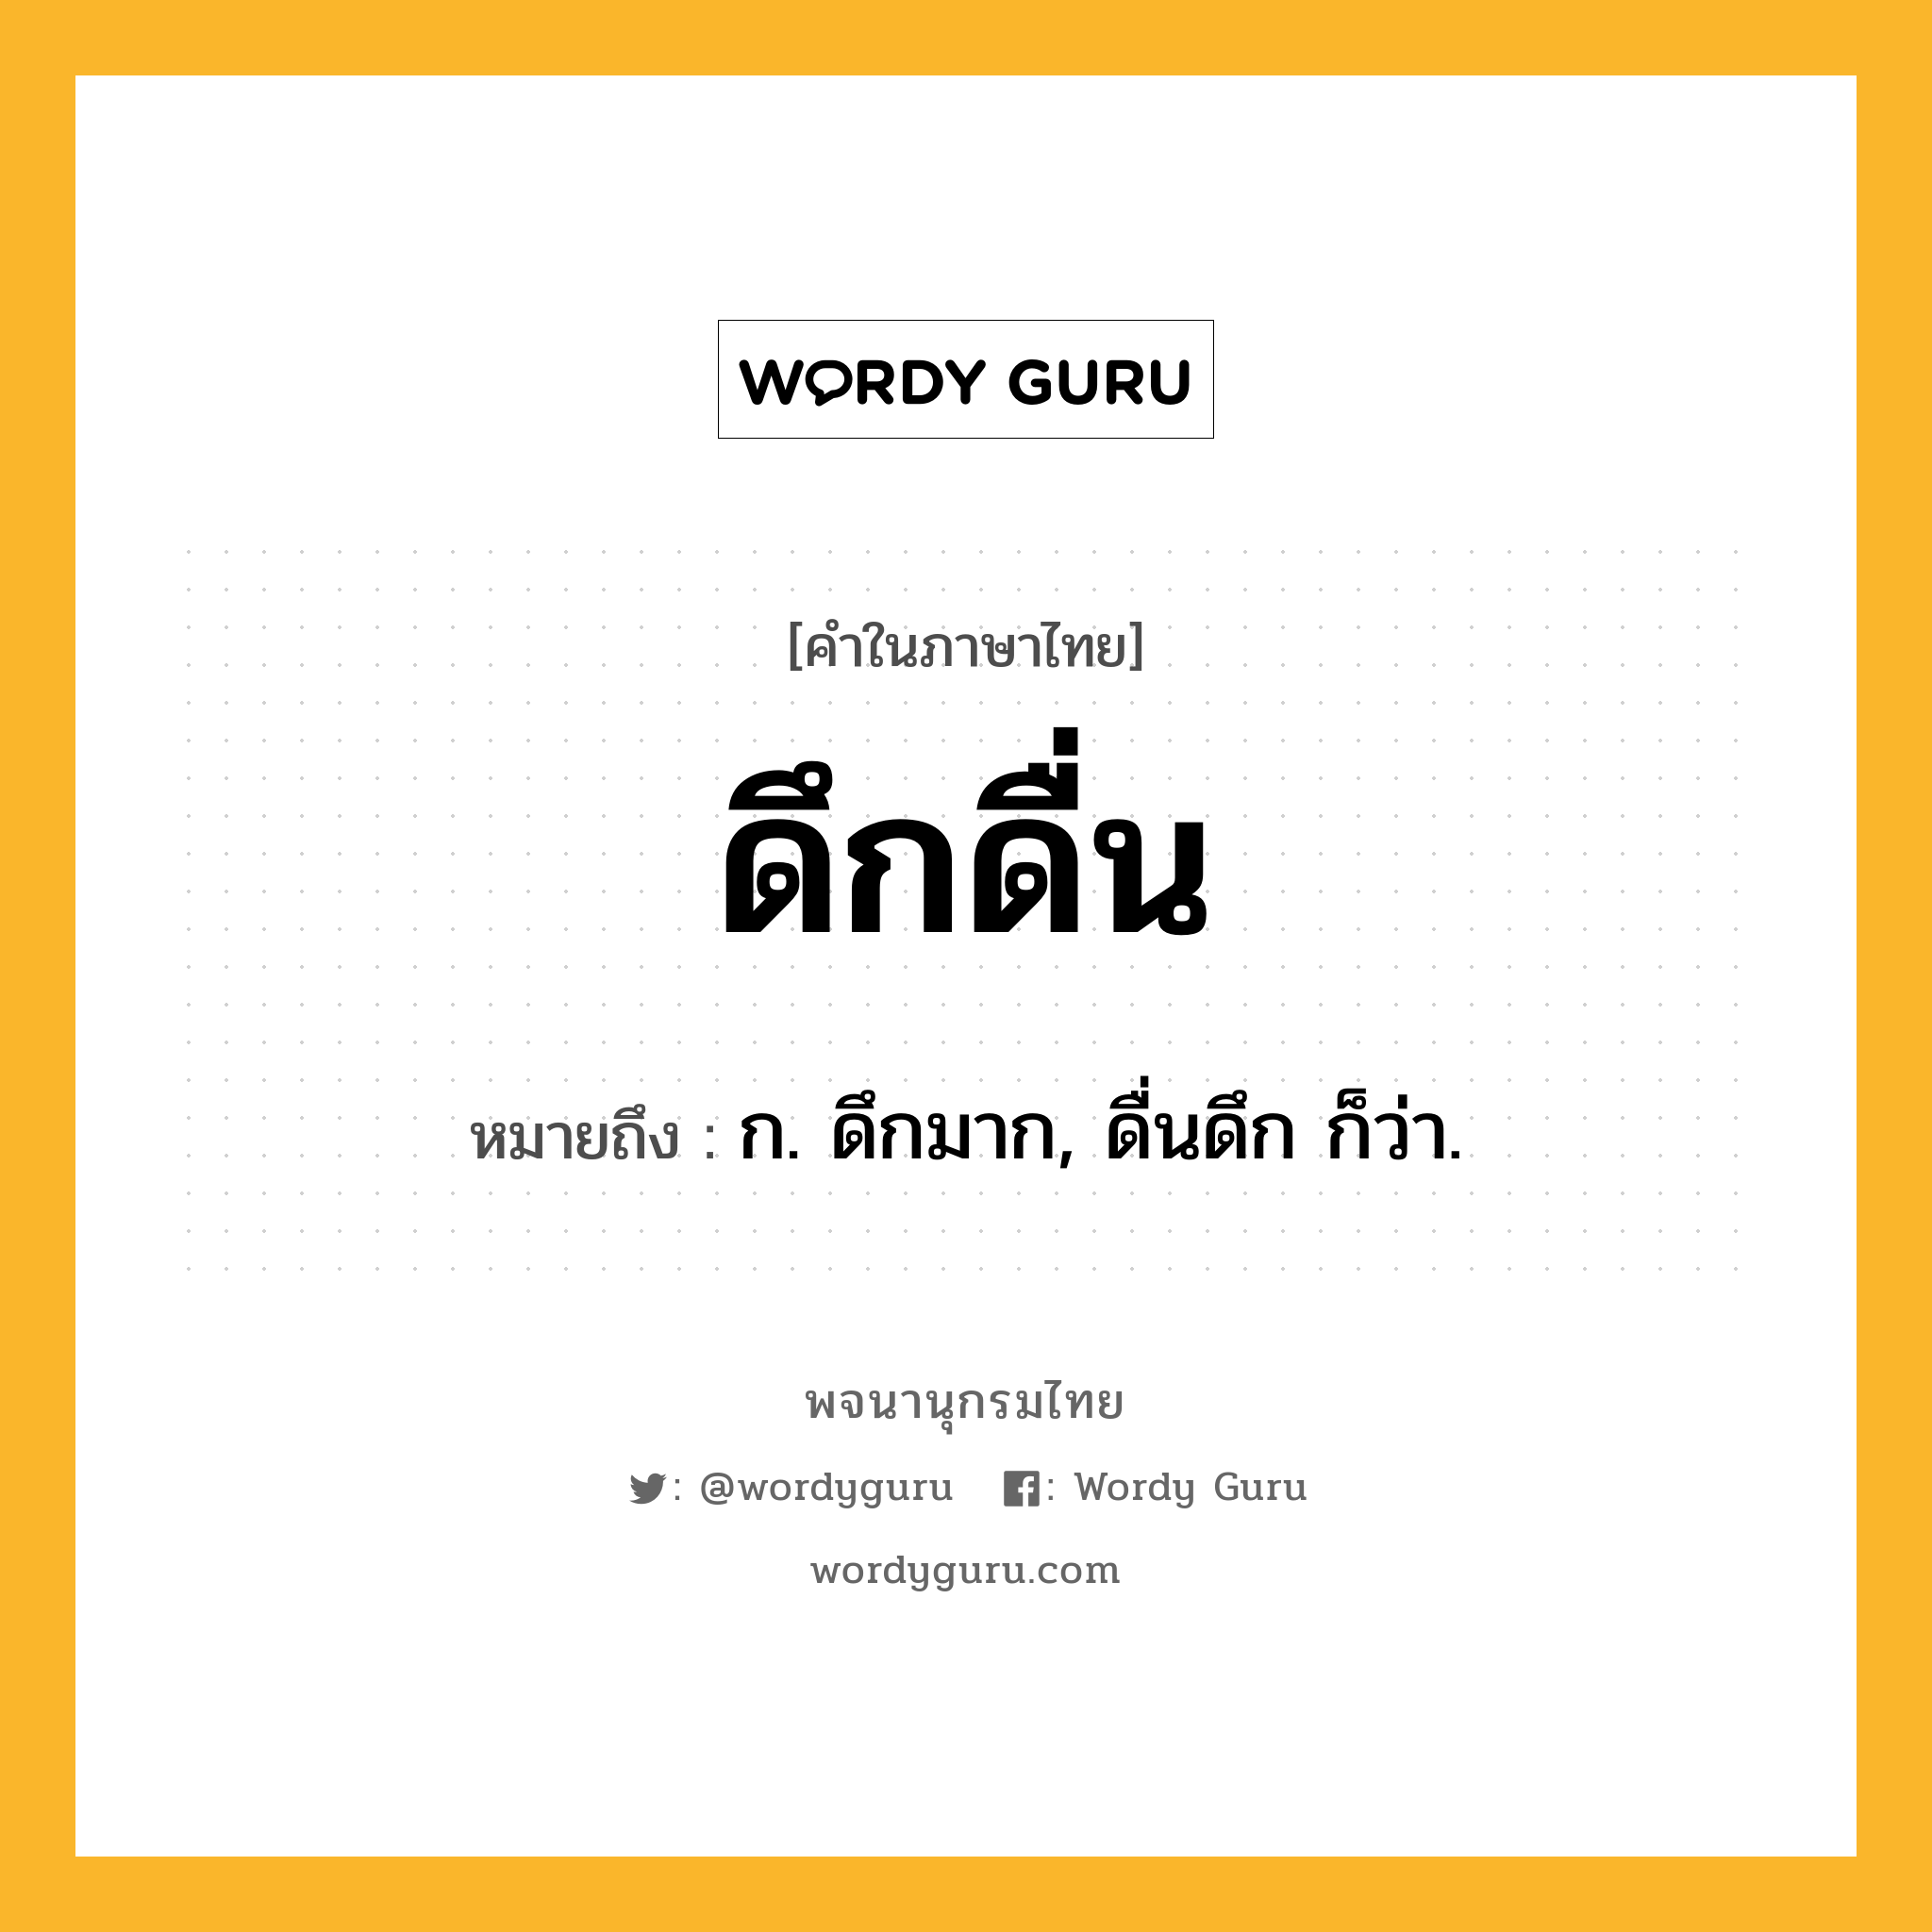 ดึกดื่น หมายถึงอะไร?, คำในภาษาไทย ดึกดื่น หมายถึง ก. ดึกมาก, ดื่นดึก ก็ว่า.